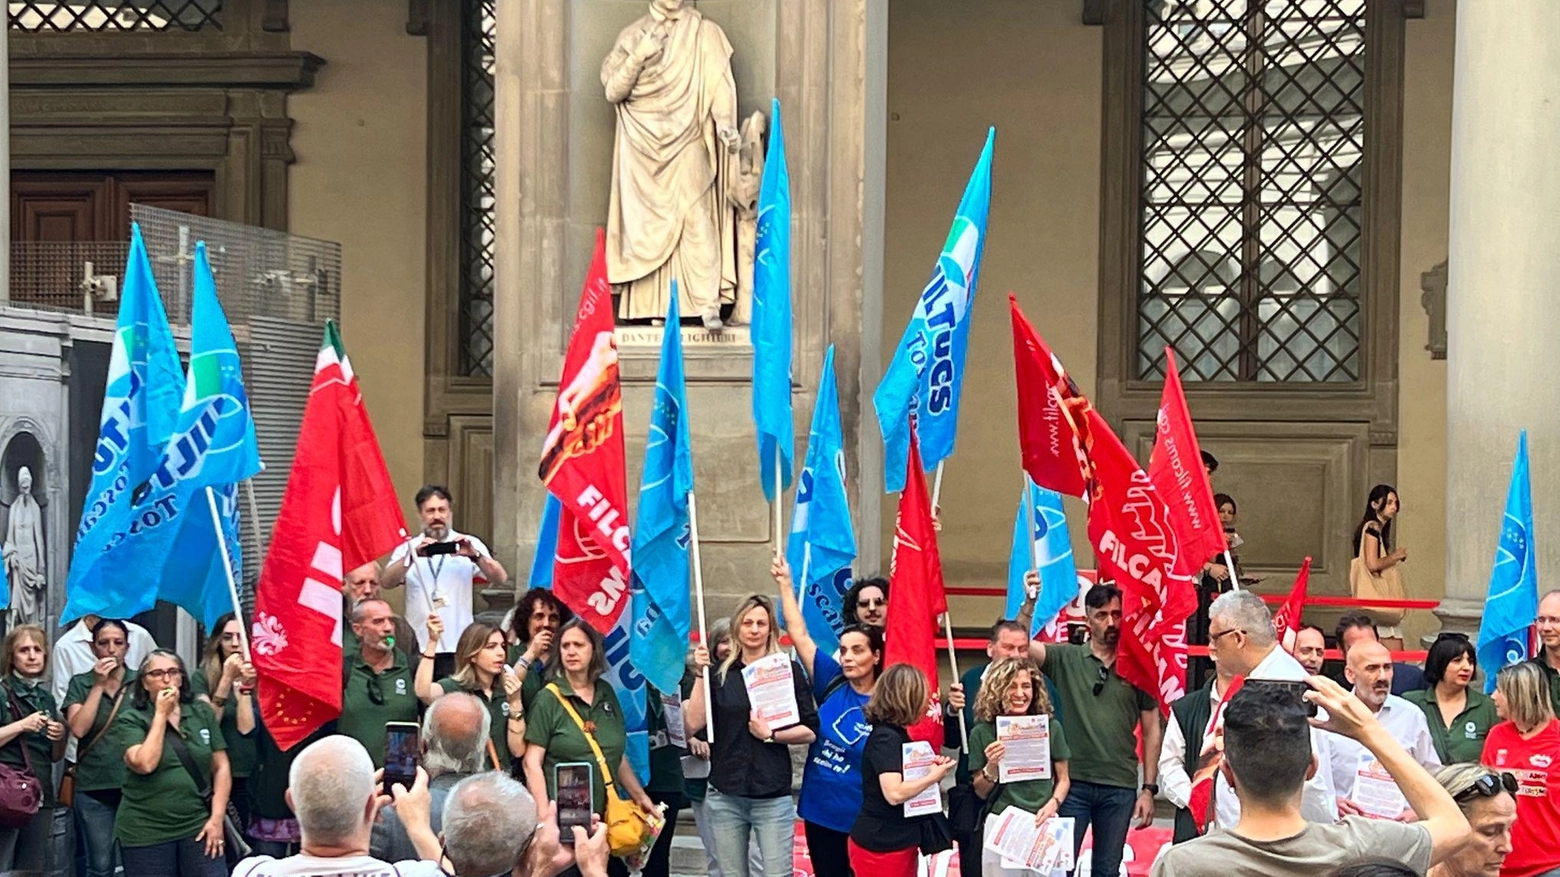 I musei annunciano la serrata  Il prossimo 24 giugno sarà sciopero  "Preoccupati per il nostro futuro"